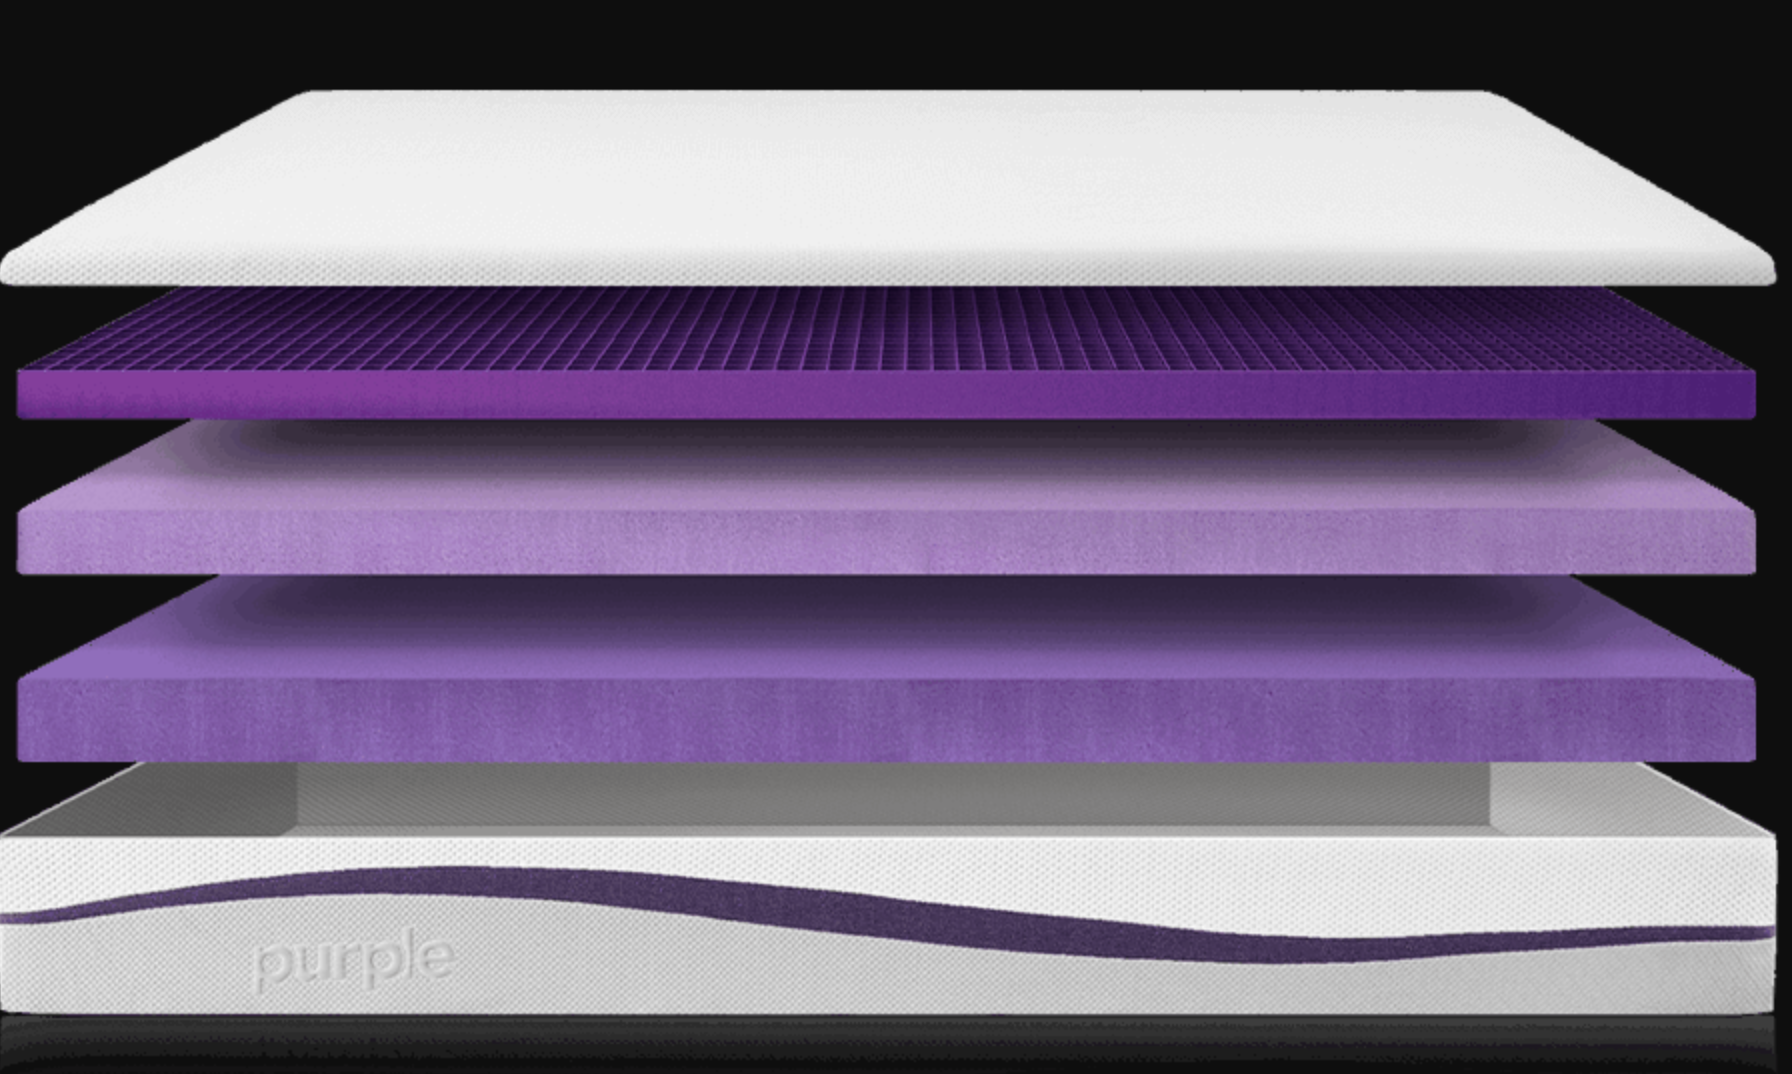 is purple mattress latex